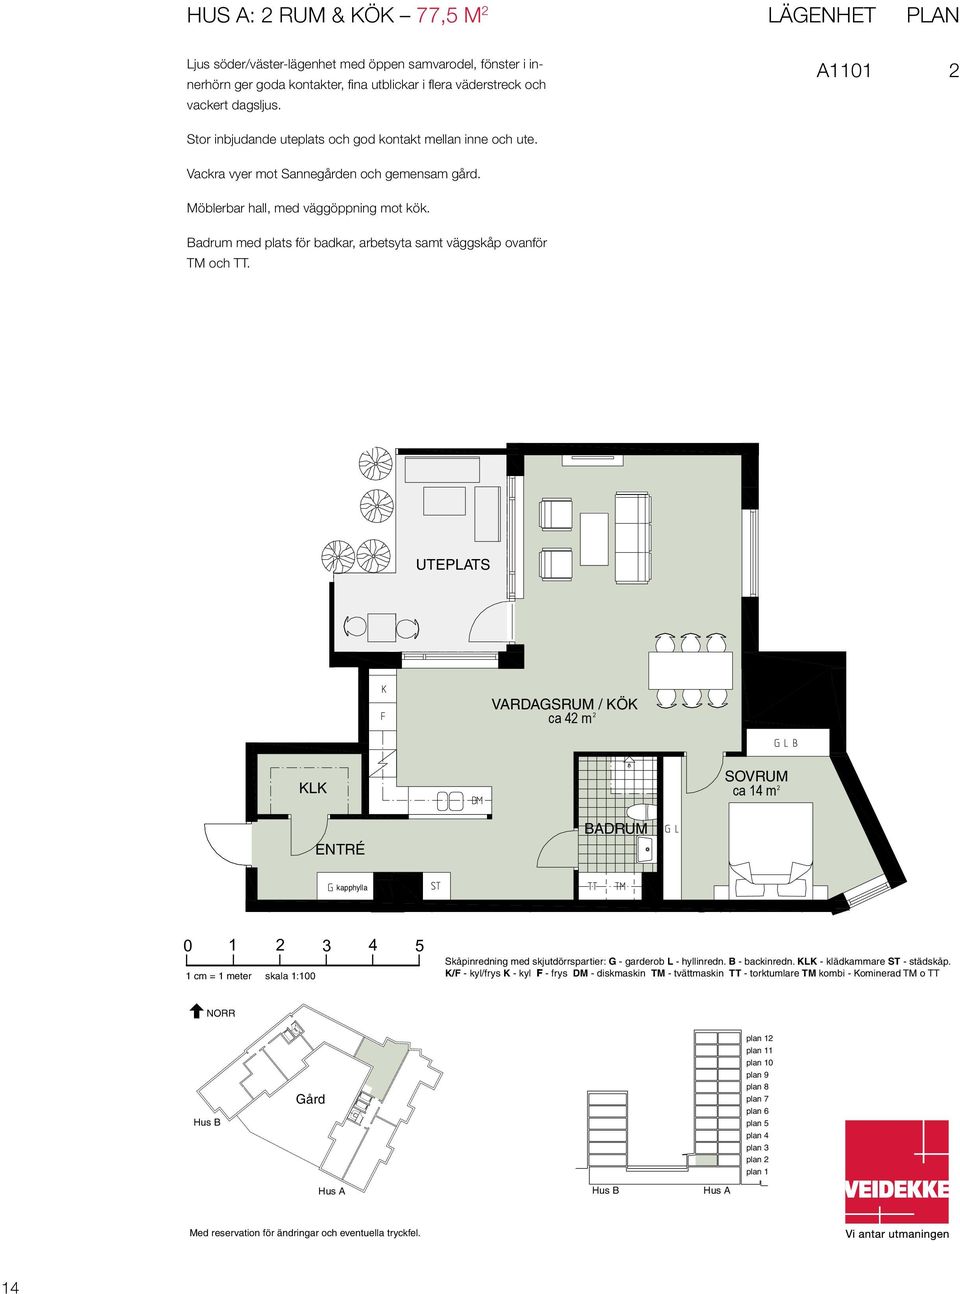 Lägenhet PLAN Lägenhet Plan Hus A1101 A1101 A Möblerbar hall, med väggöppning mot kök. Badrum med plats för badkar, arbetsyta samt väggskåp ovanför TM och TT.